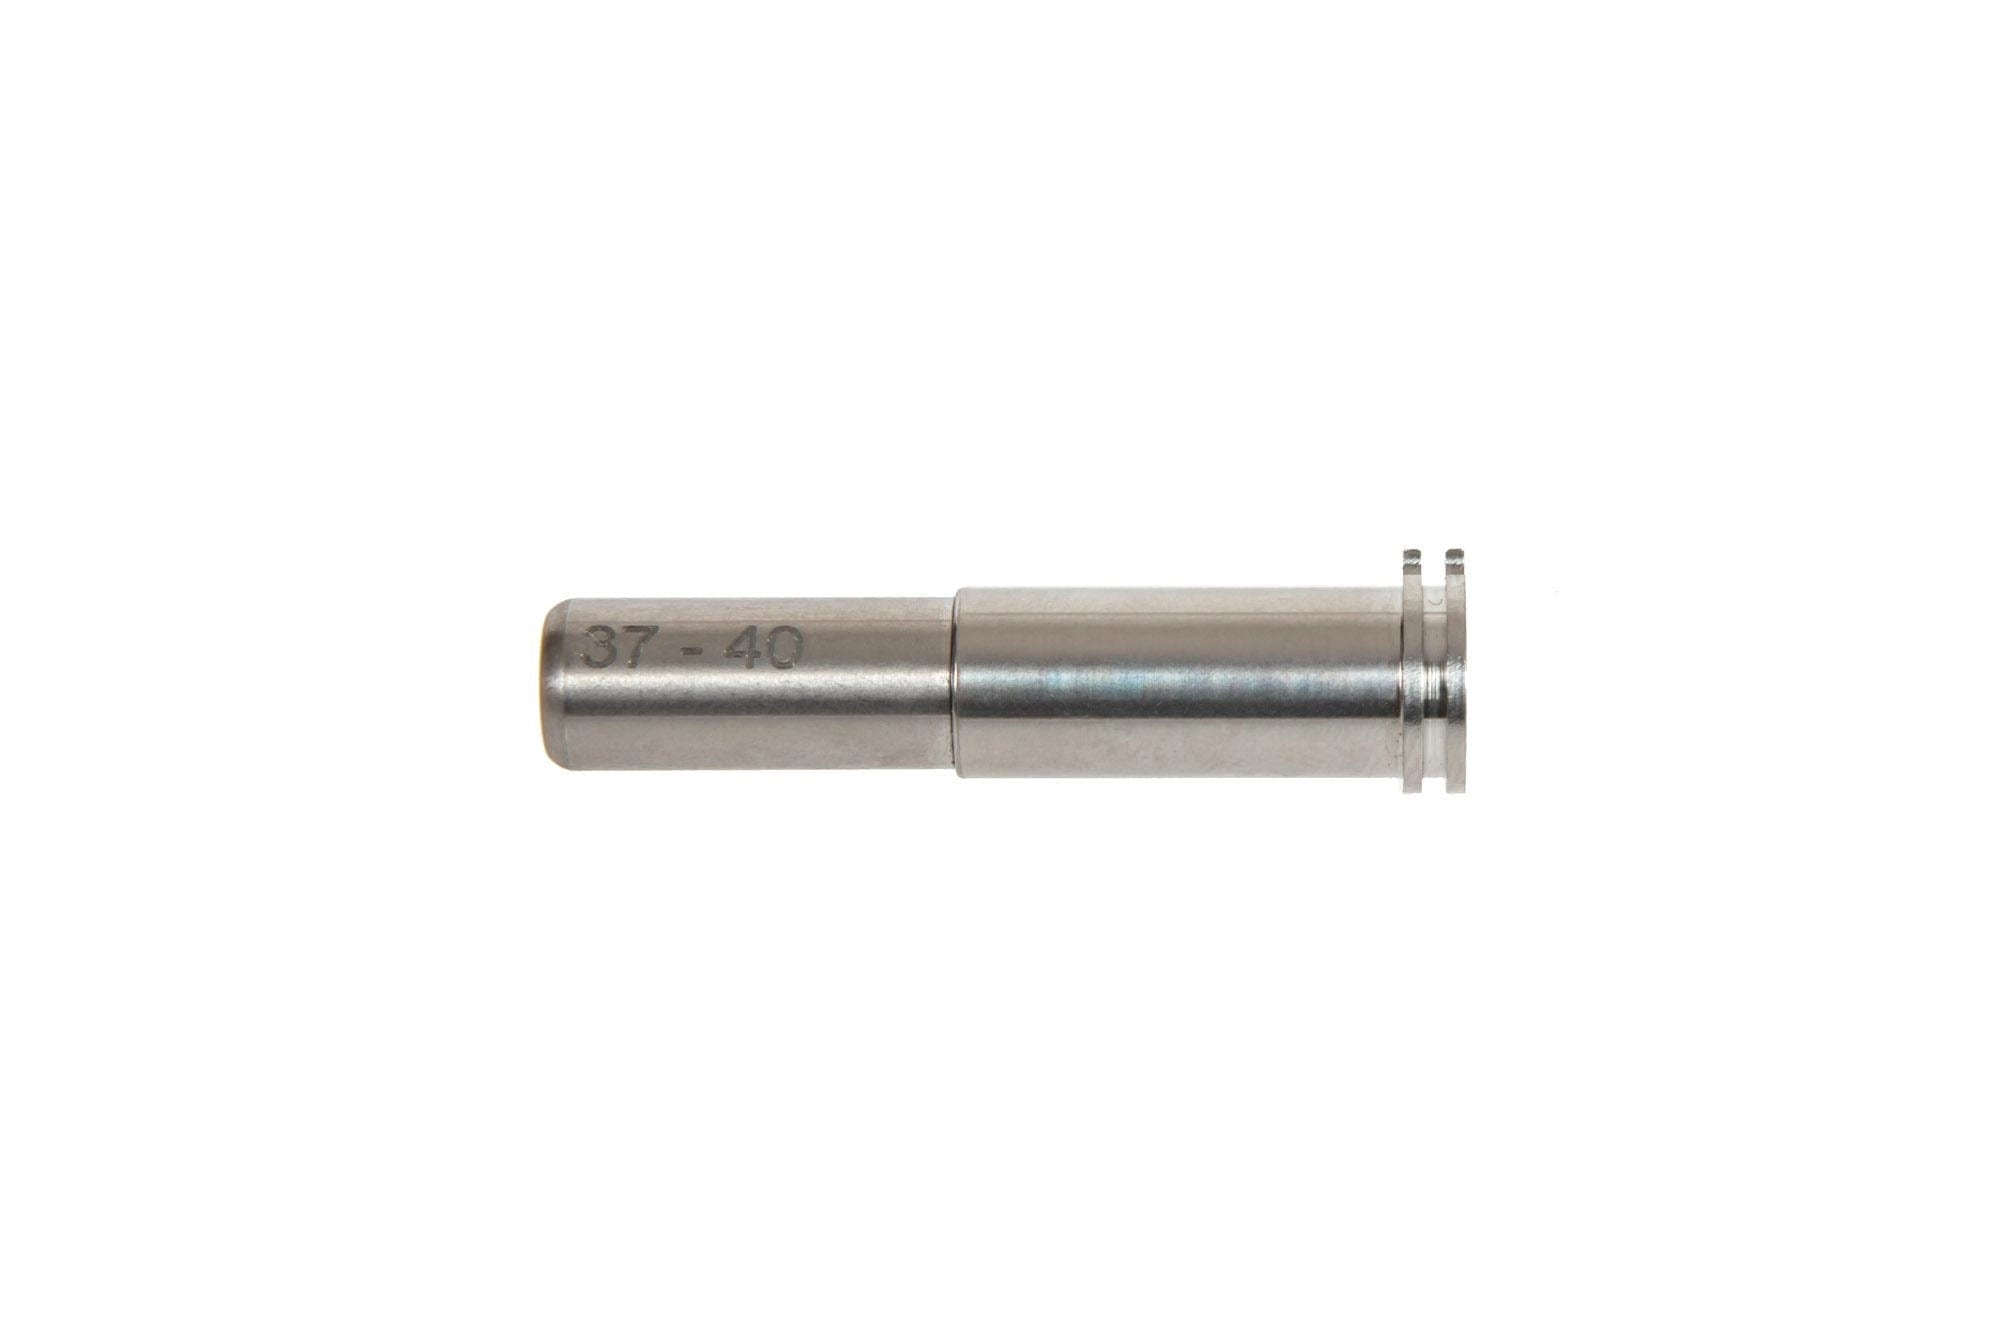 Adjustable Titanium Nozzle - 37mm to 40mm